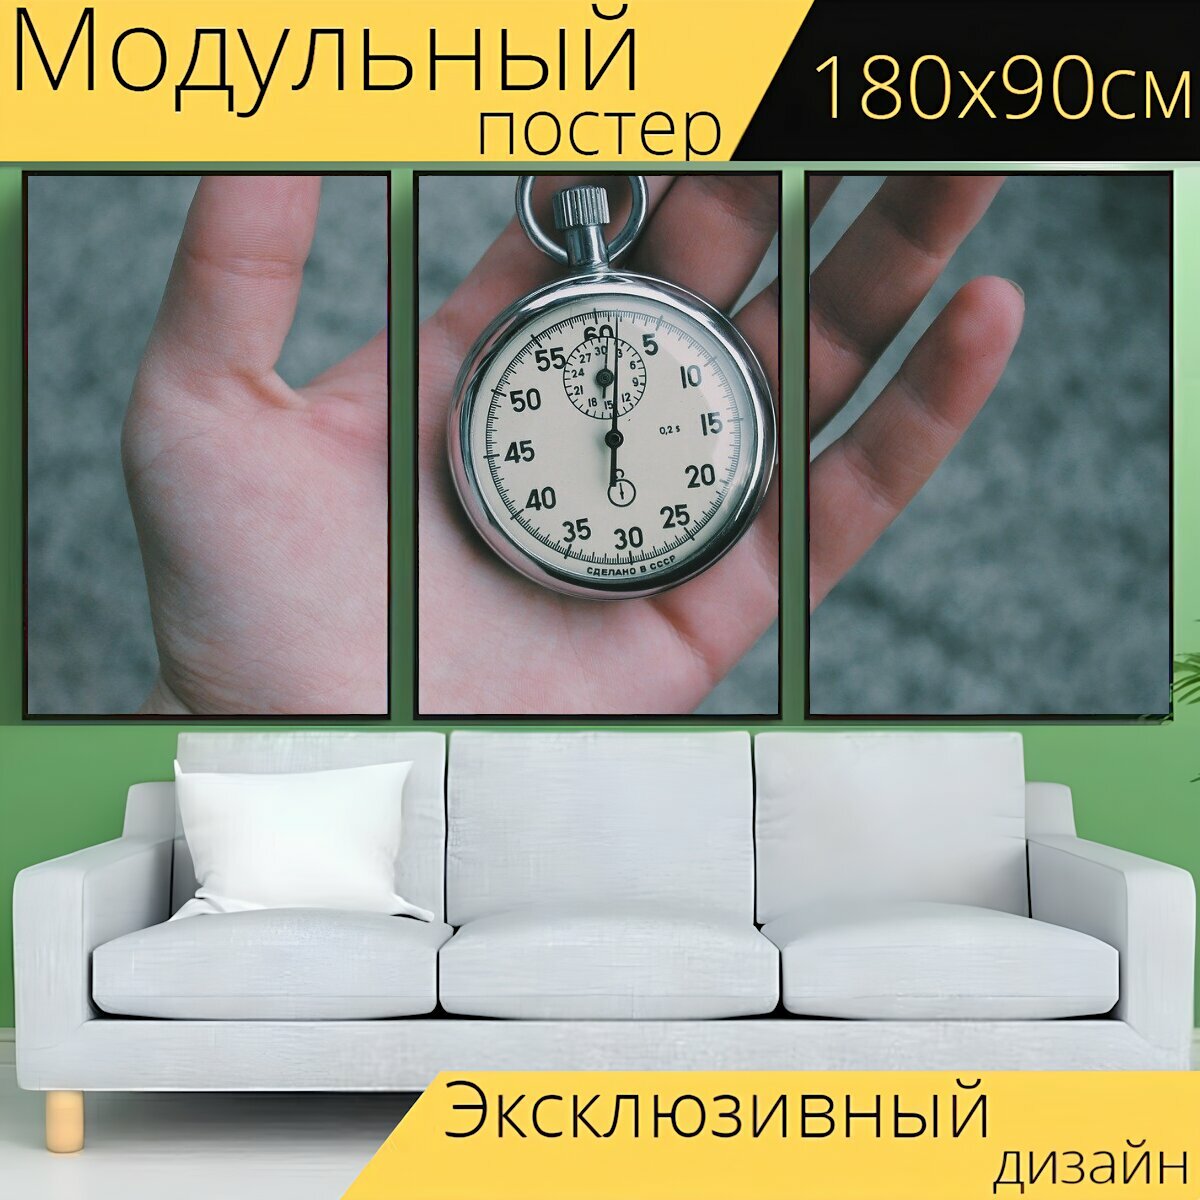 Модульный постер "Время, секундомер, часы" 180 x 90 см. для интерьера